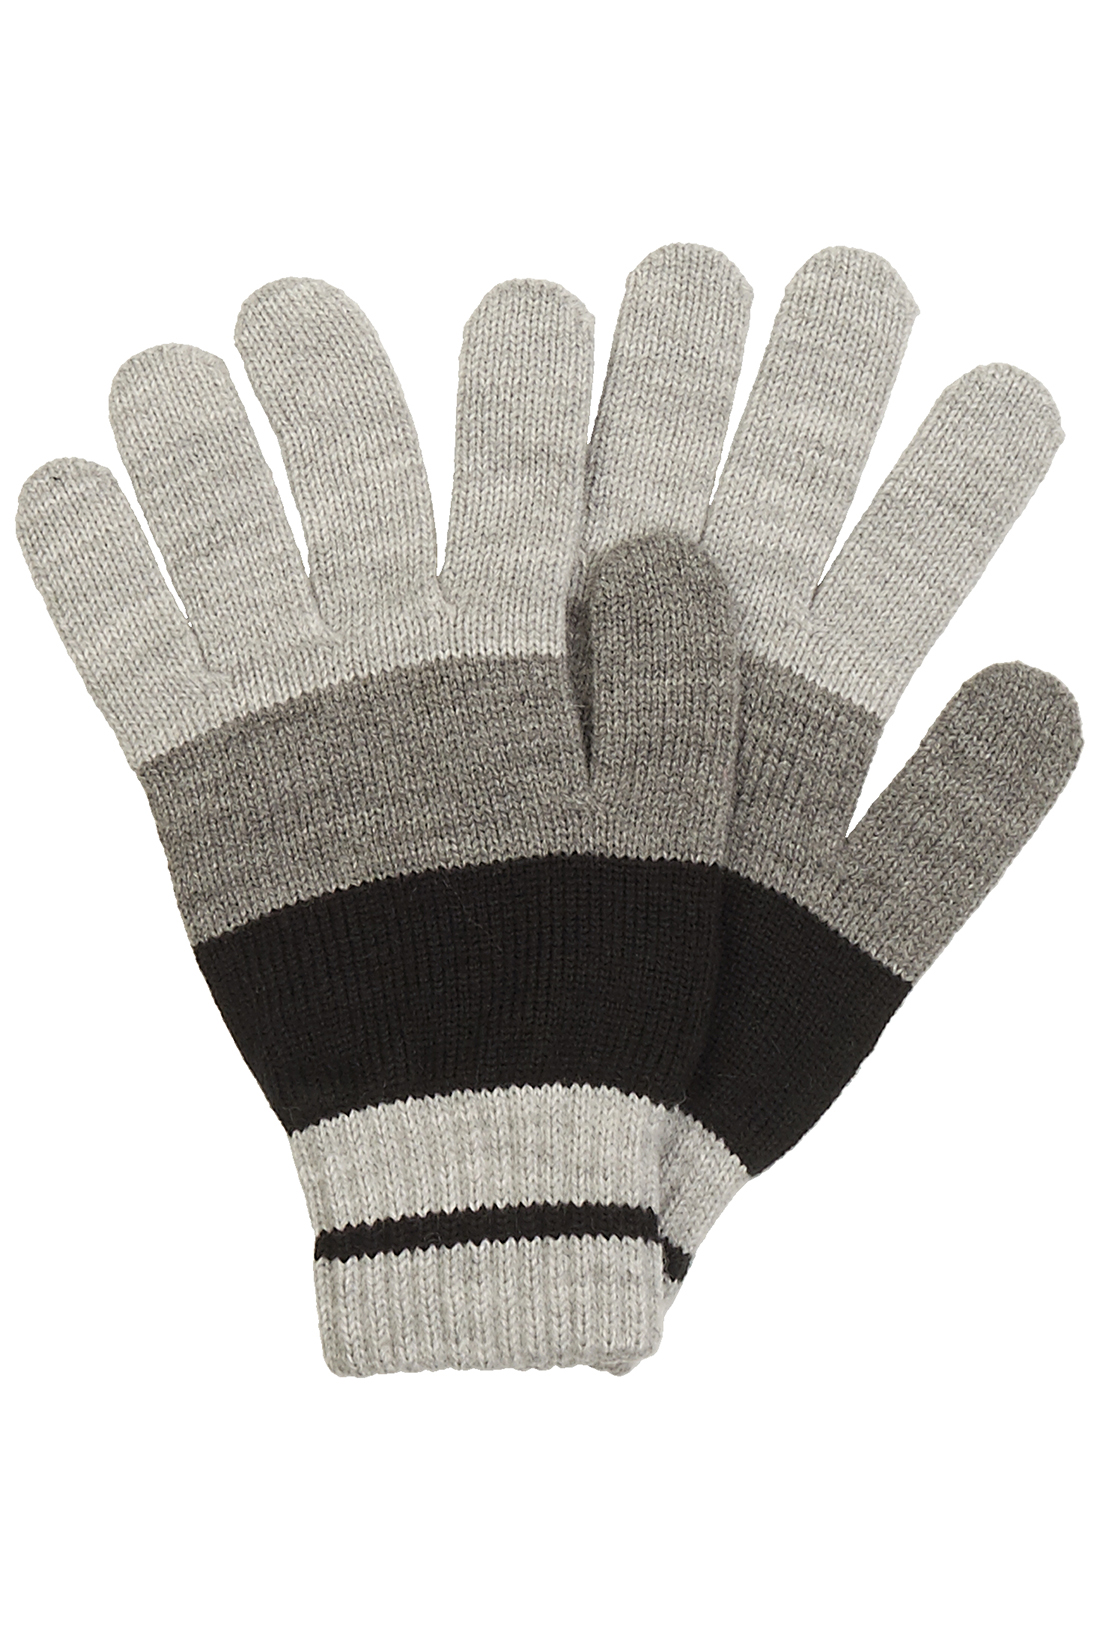 Трёхцветные перчатки (арт. baon B868503), размер Без/раз